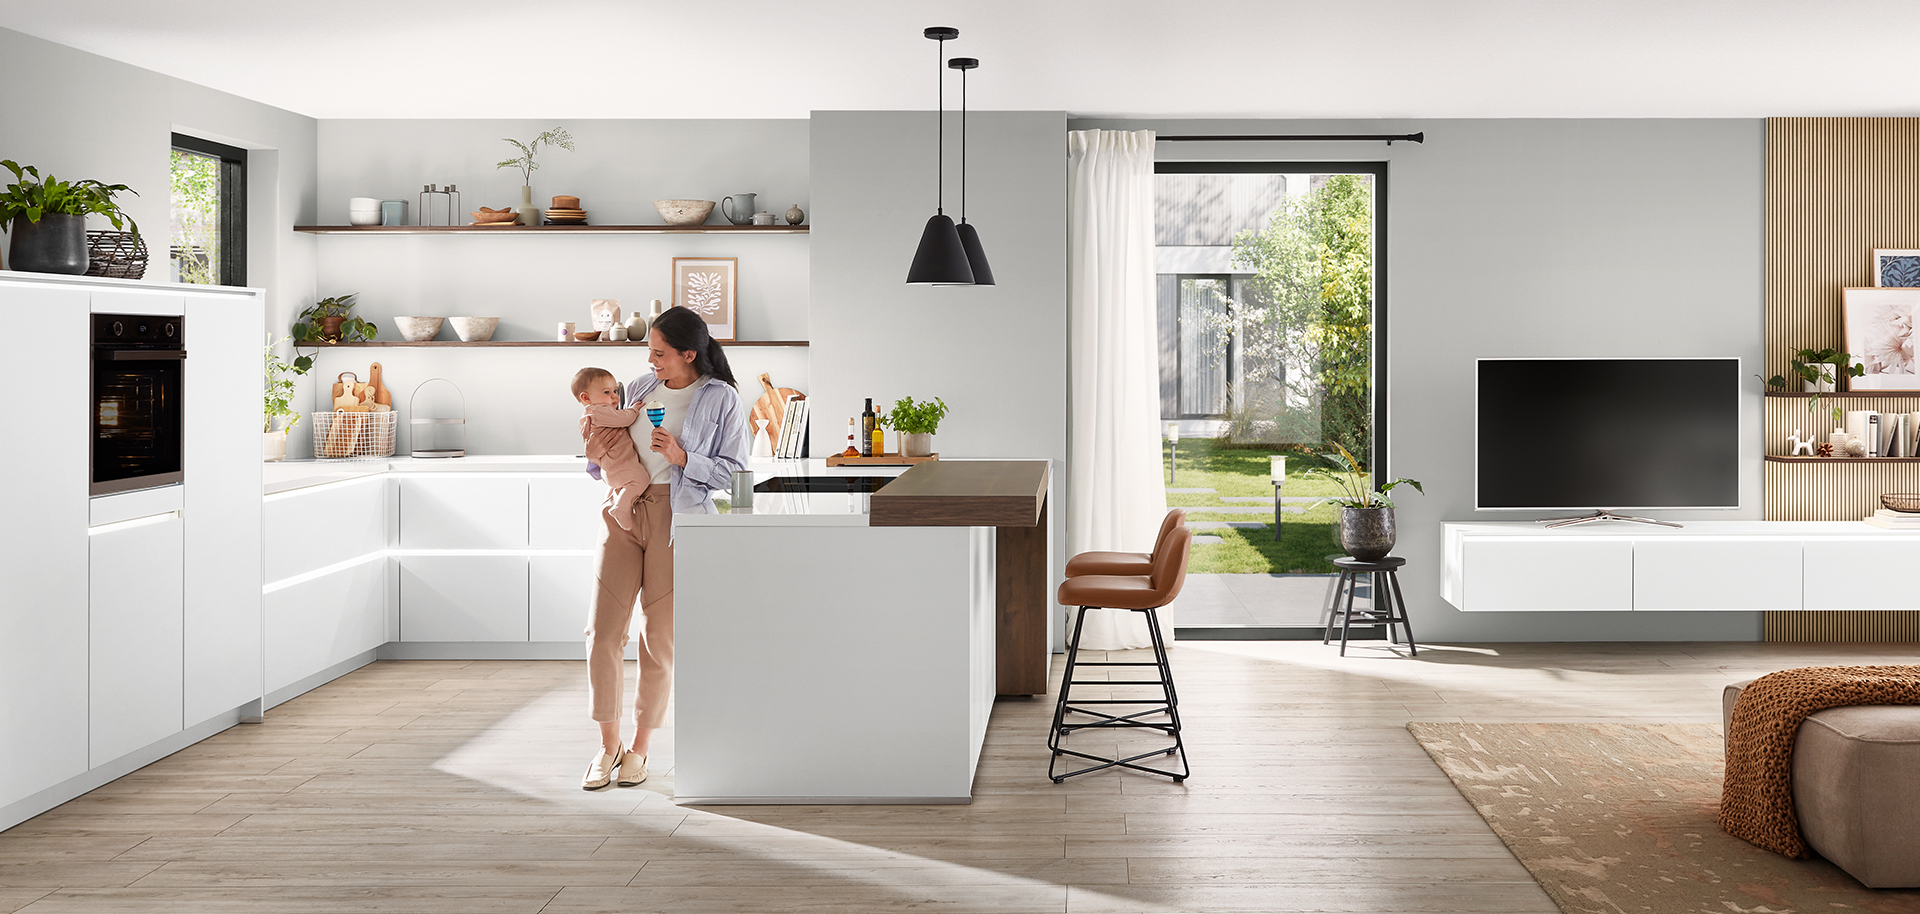 Moderní kuchyňský interiér s čistým, minimalistickým designem s bílými skříňkami, centrálním ostrovem a mladou matkou, která něžně drží své dítě.